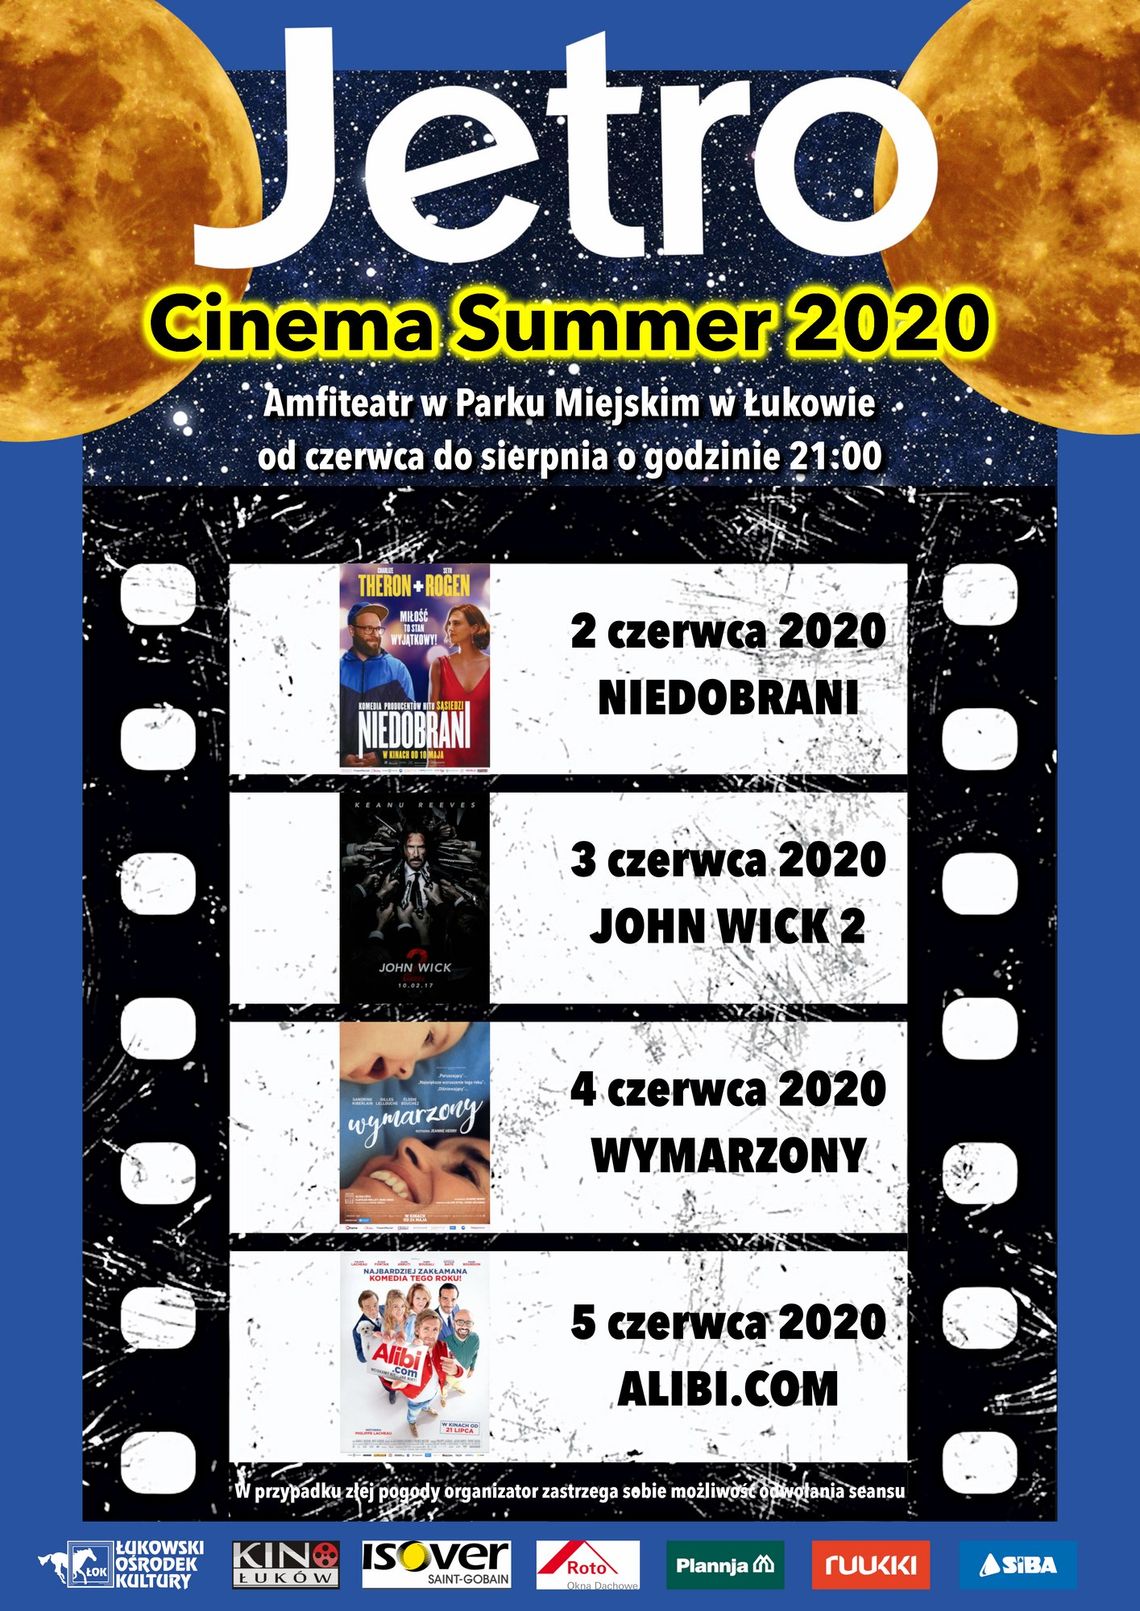 JETRO CINEMA SUMMER 2020 /2-5 czerwca 2020